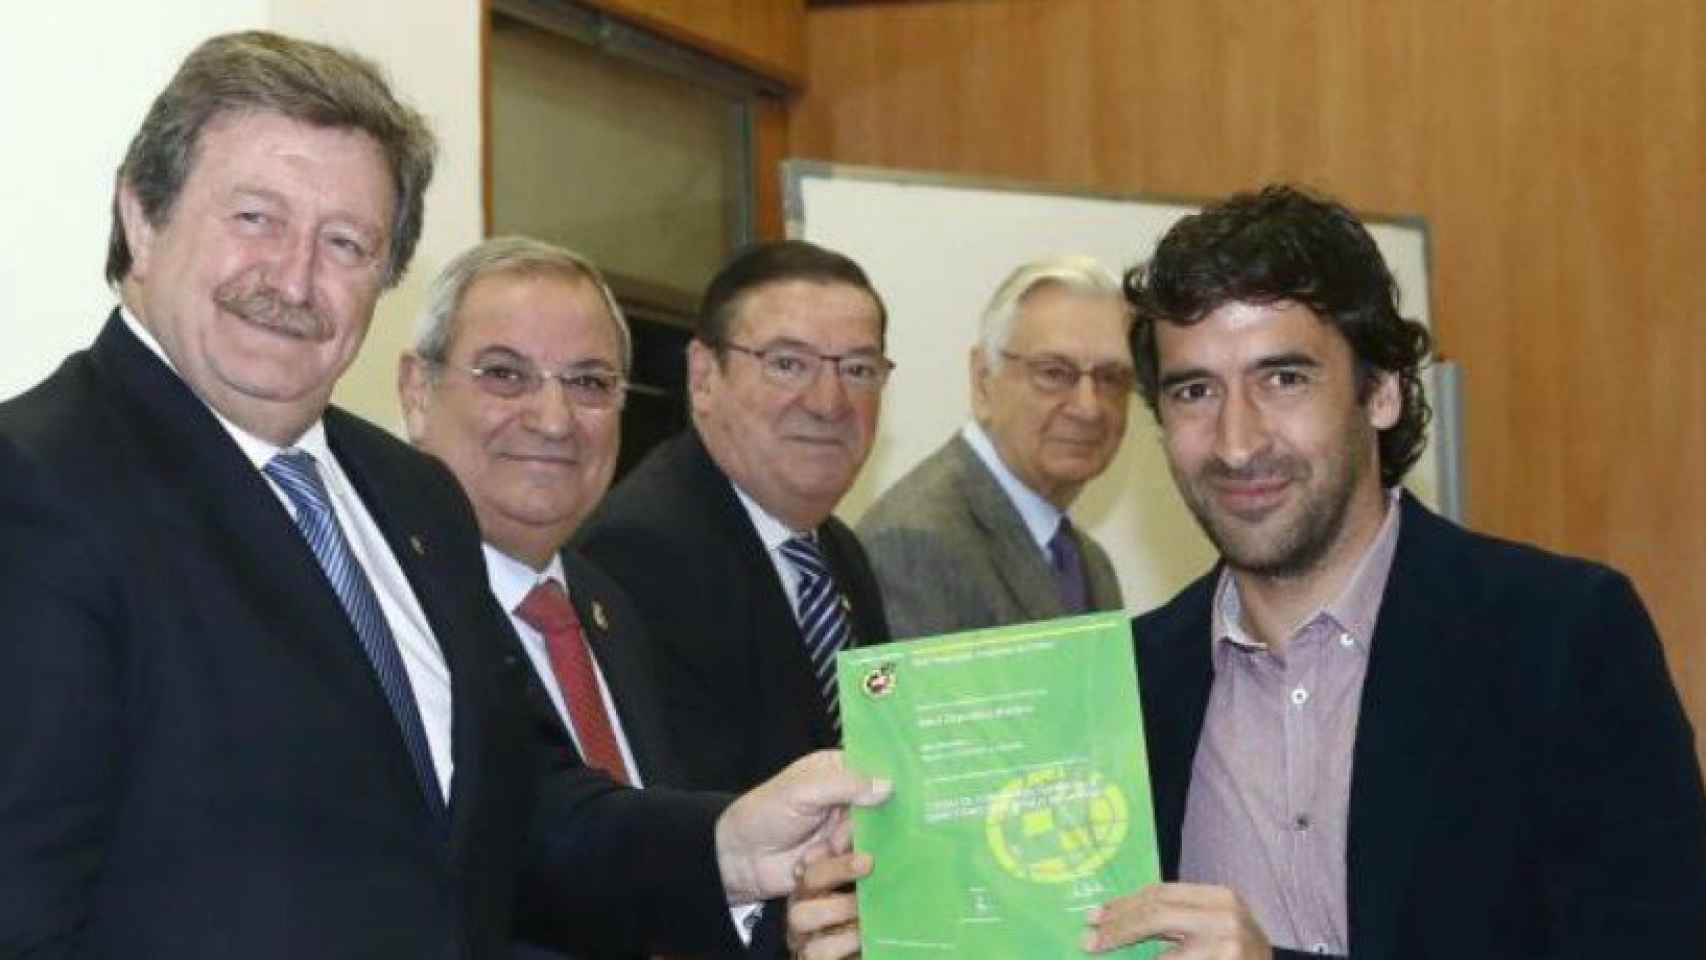 Raúl, con su diploma del  Curso de Formación Superior de Directores Deportivos de la RFEF. Foto: rfef.es